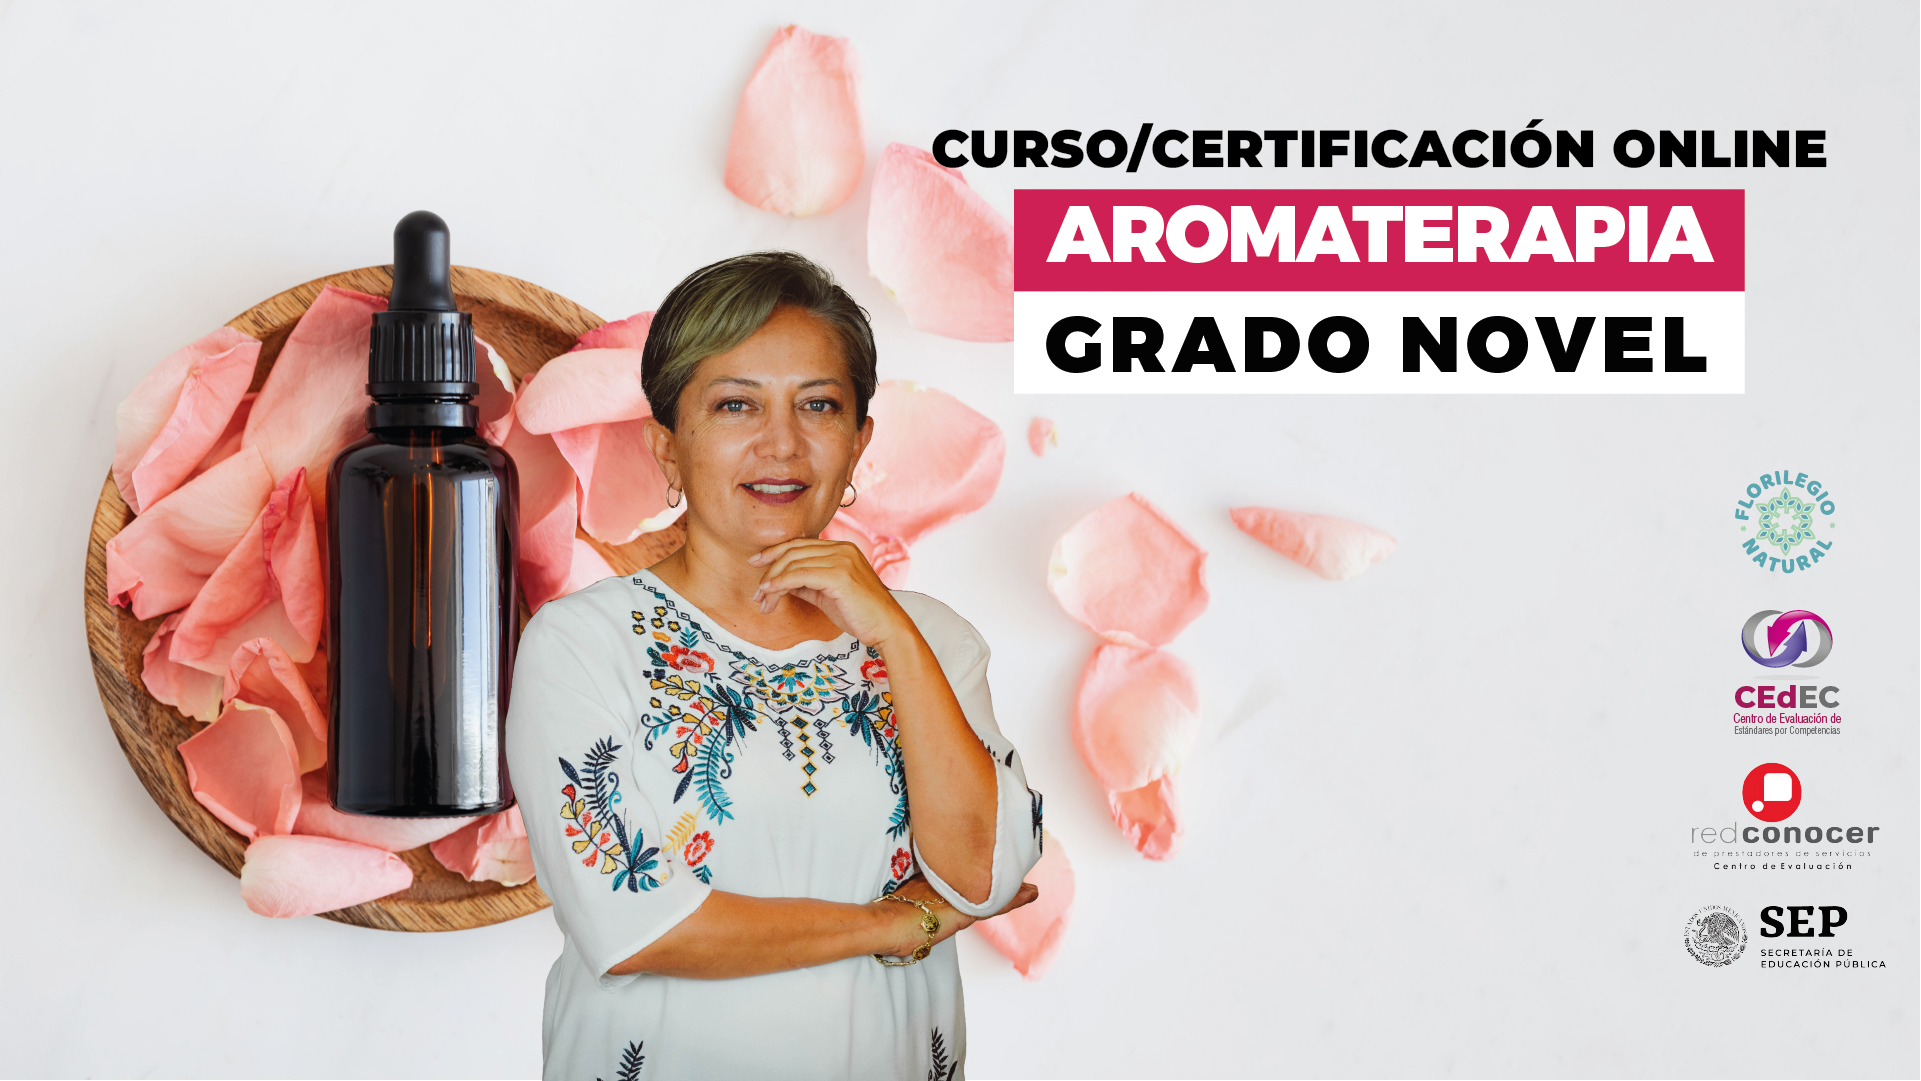 Curso / Certificación: Aromaterapia grado novel